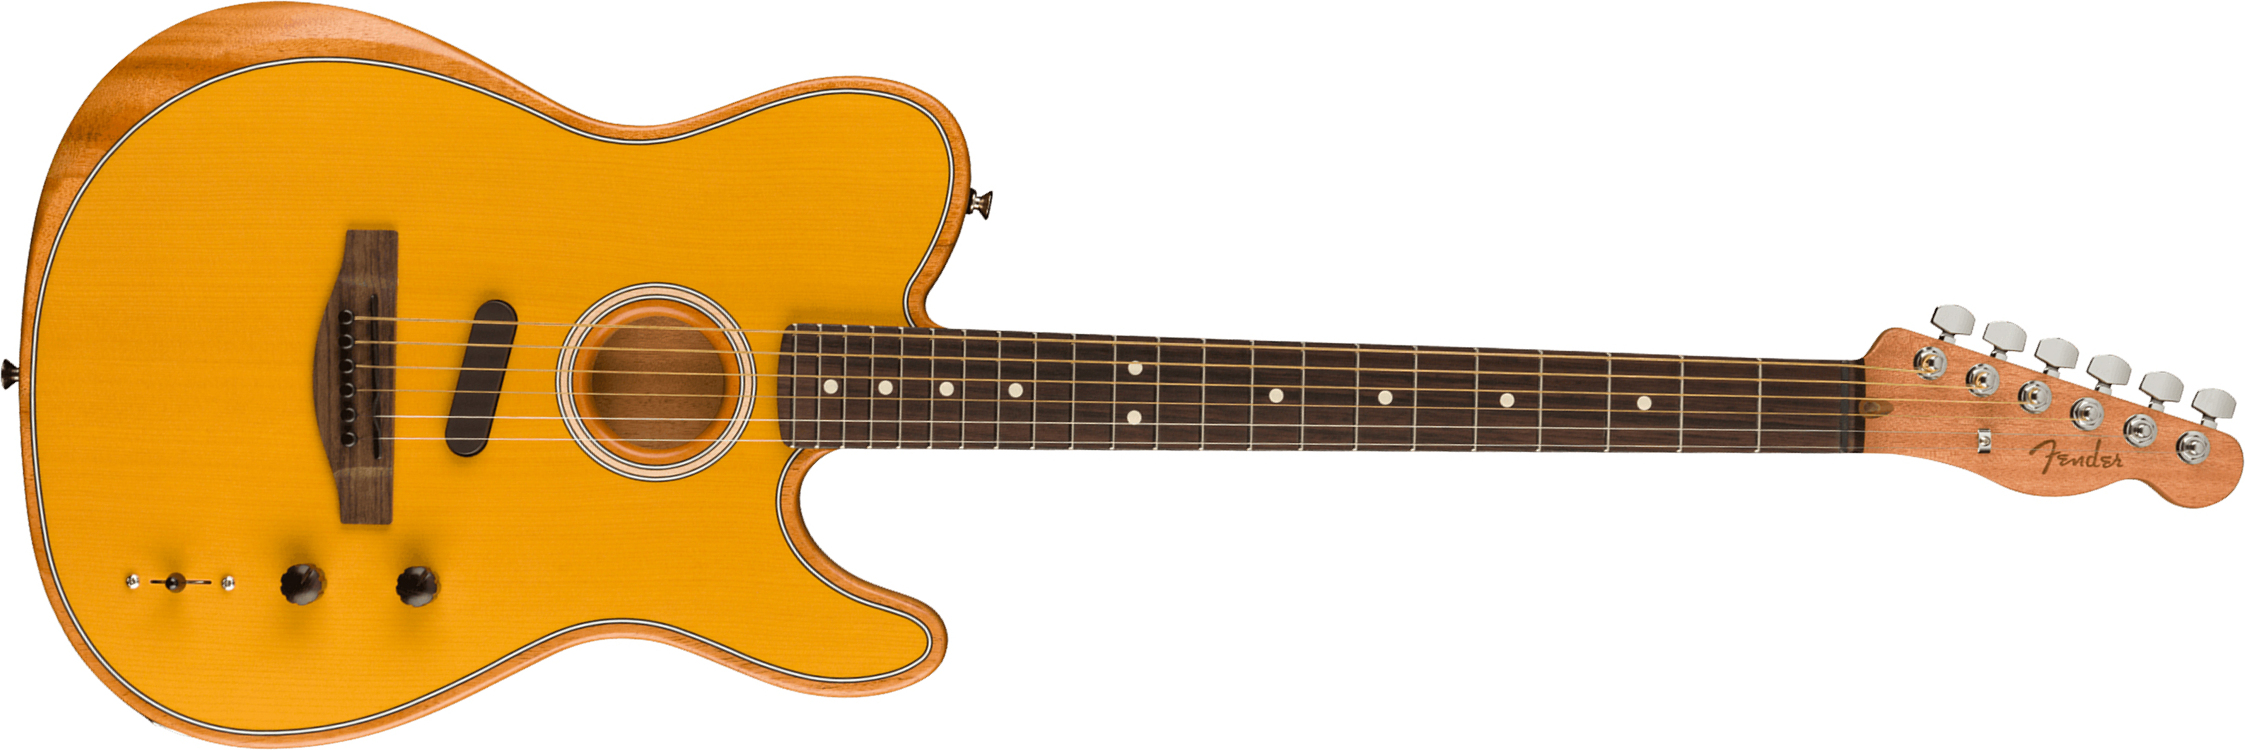 Fender Acoustasonic Tele Player Mex Epicea Acajou Rw - Butterscotch Blonde - Guitare Electro Acoustique - Main picture